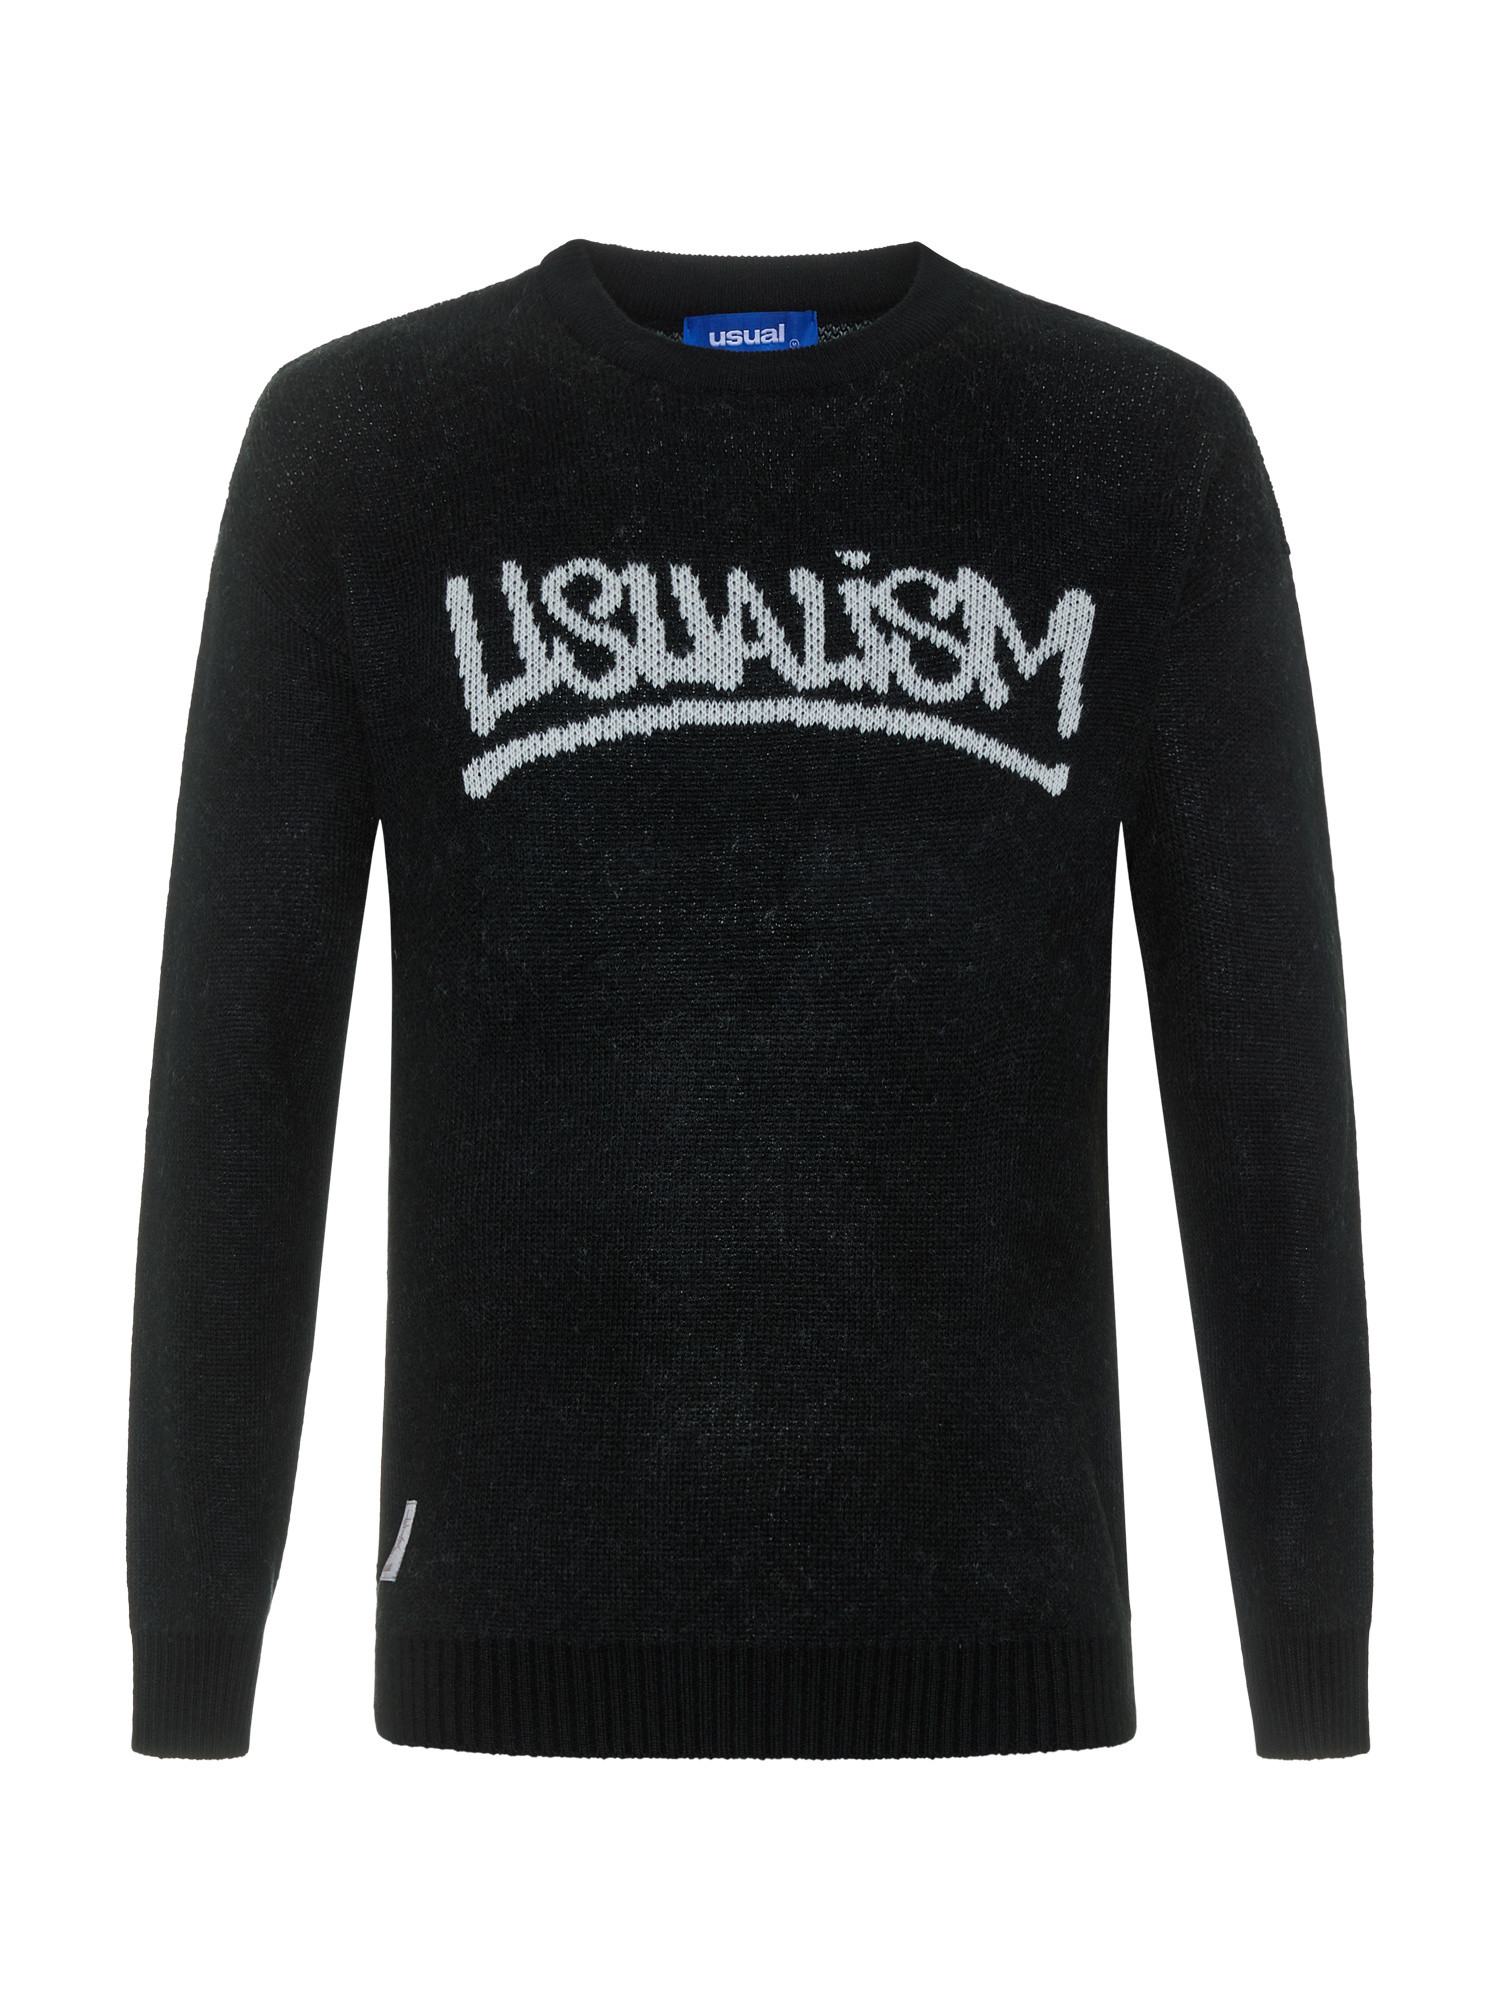 Usual Свитер с круглым вырезом в стиле Usualism, черный свитер из мохера latrika черный